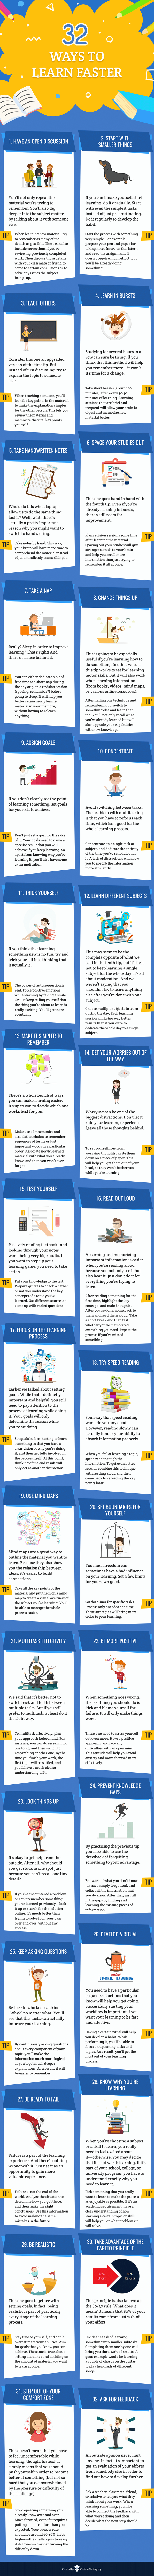 32 Amazing Learning Tips